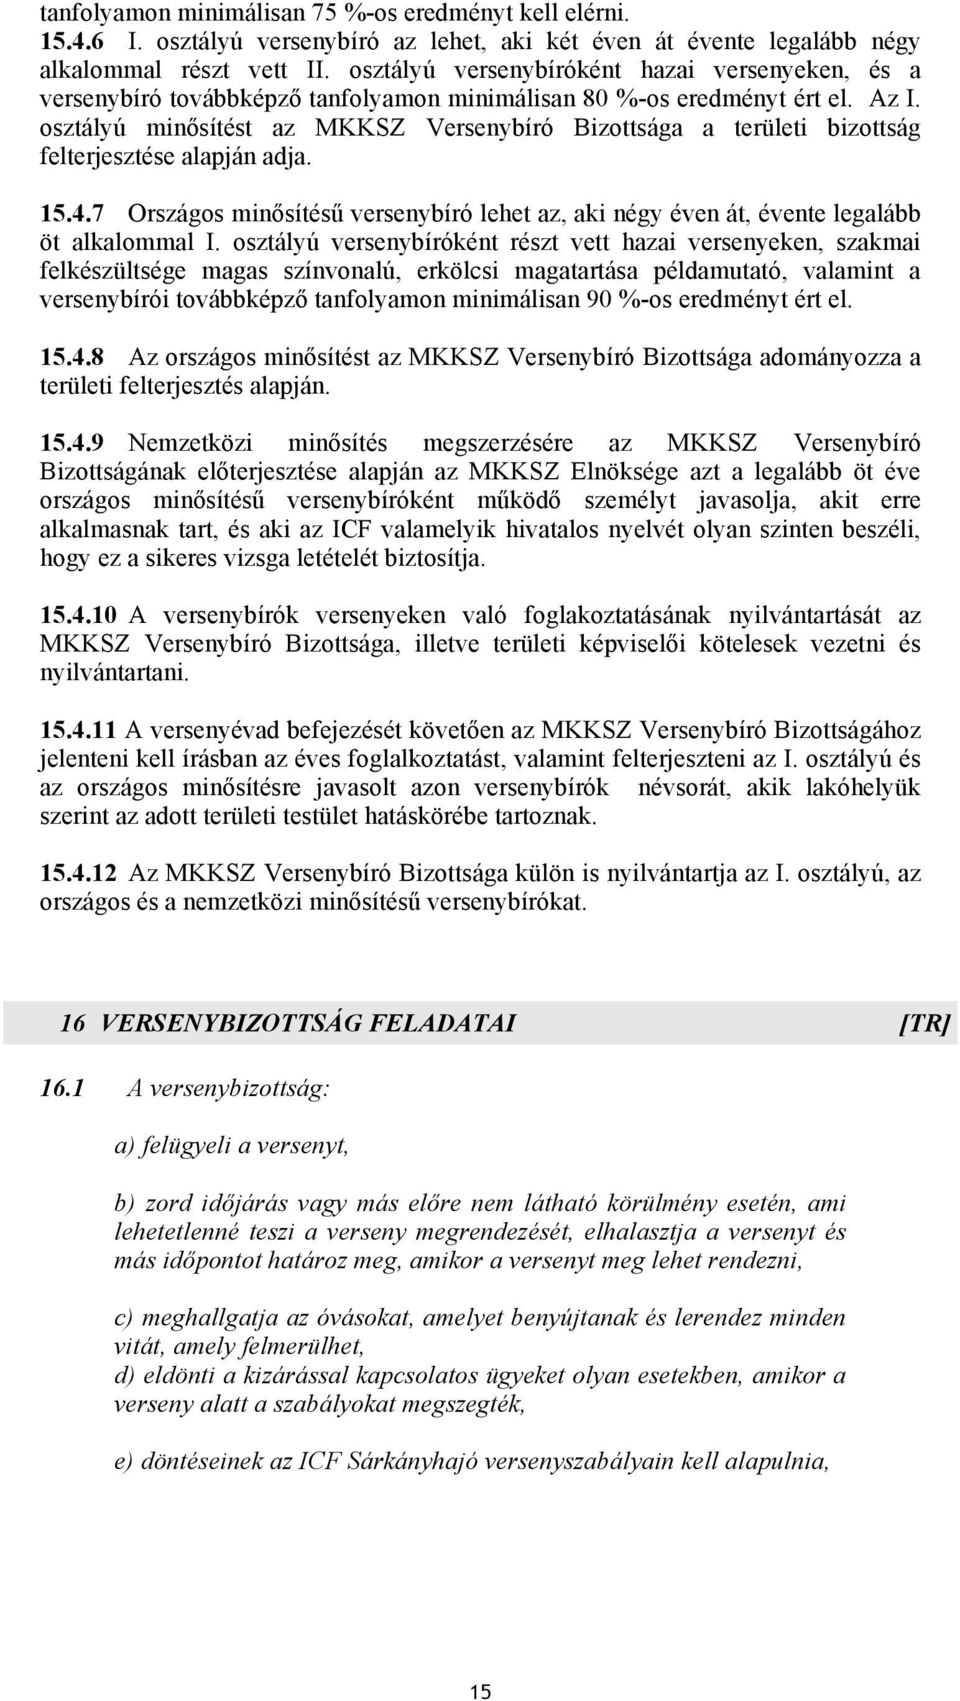 osztályú minősítést az MKKSZ Versenybíró Bizottsága a területi bizottság felterjesztése alapján adja. 15.4.